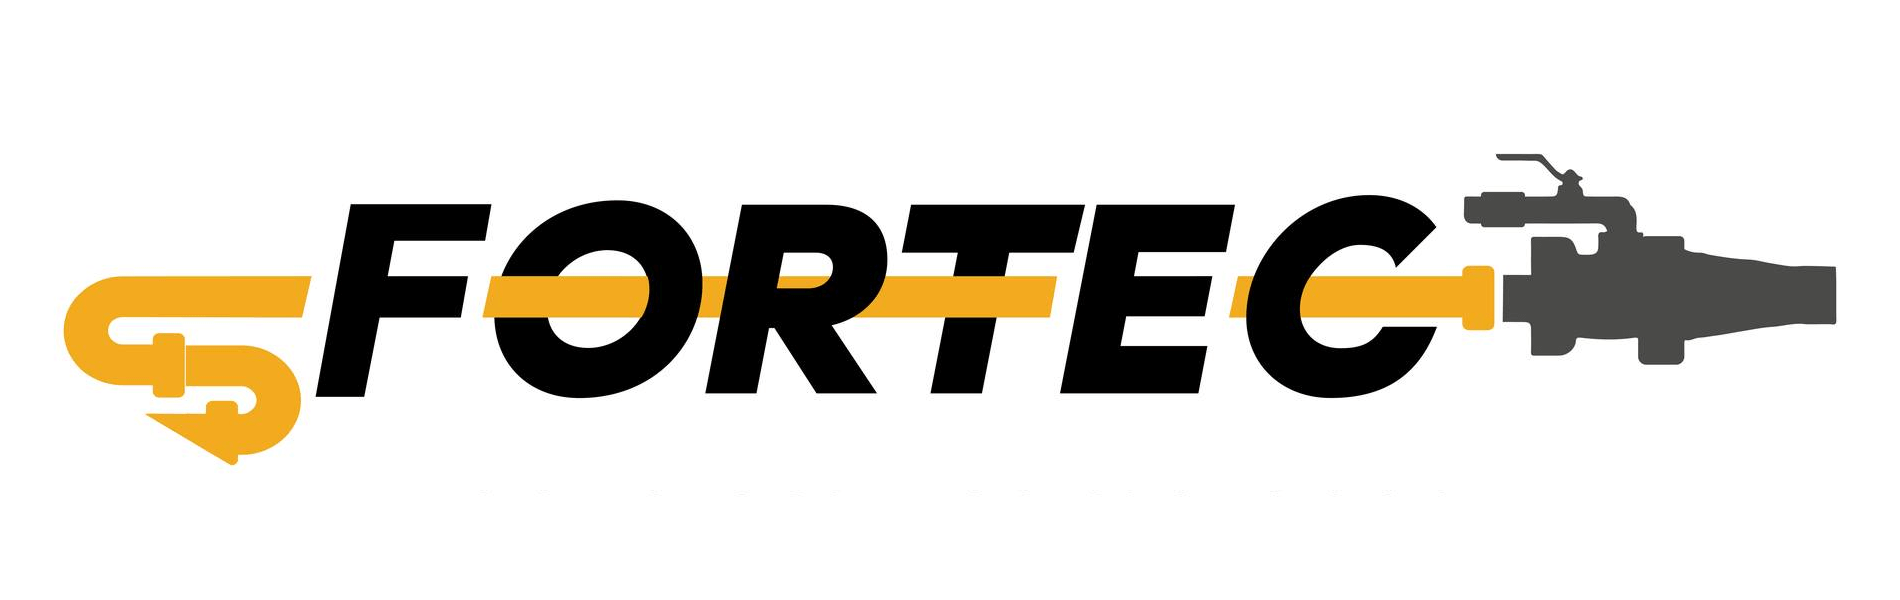 Logotipo Fortec Lanzado de Concreto